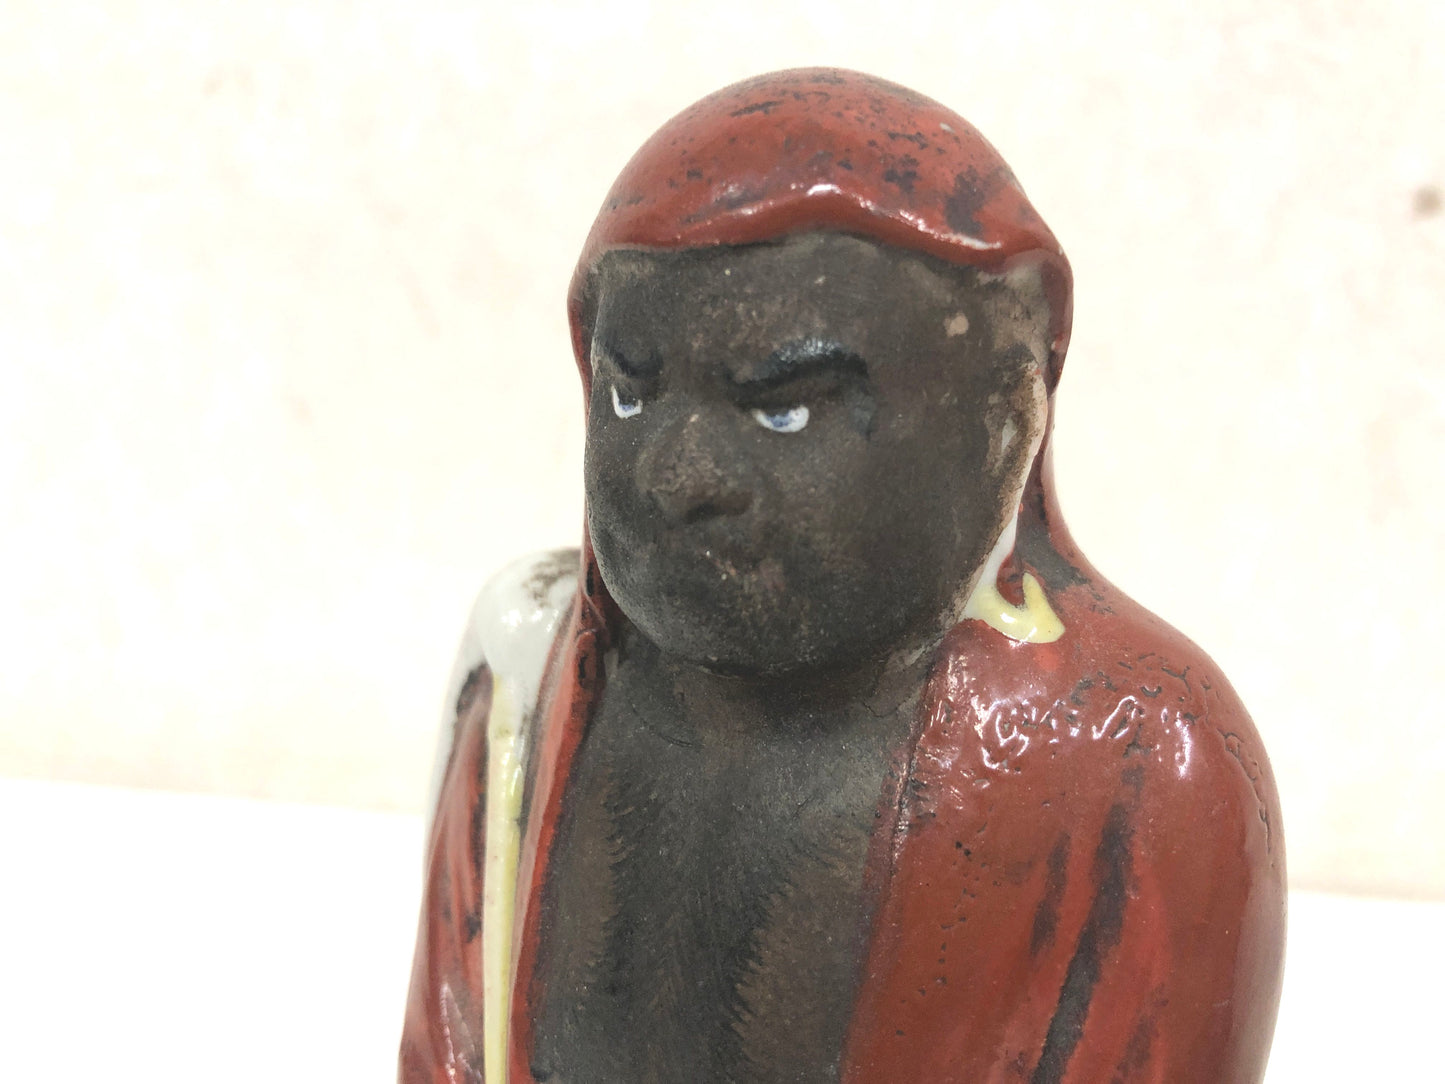 Y3946 OKIMONO Kutani-ware Daruma figure figurine Japan vintage antique interior